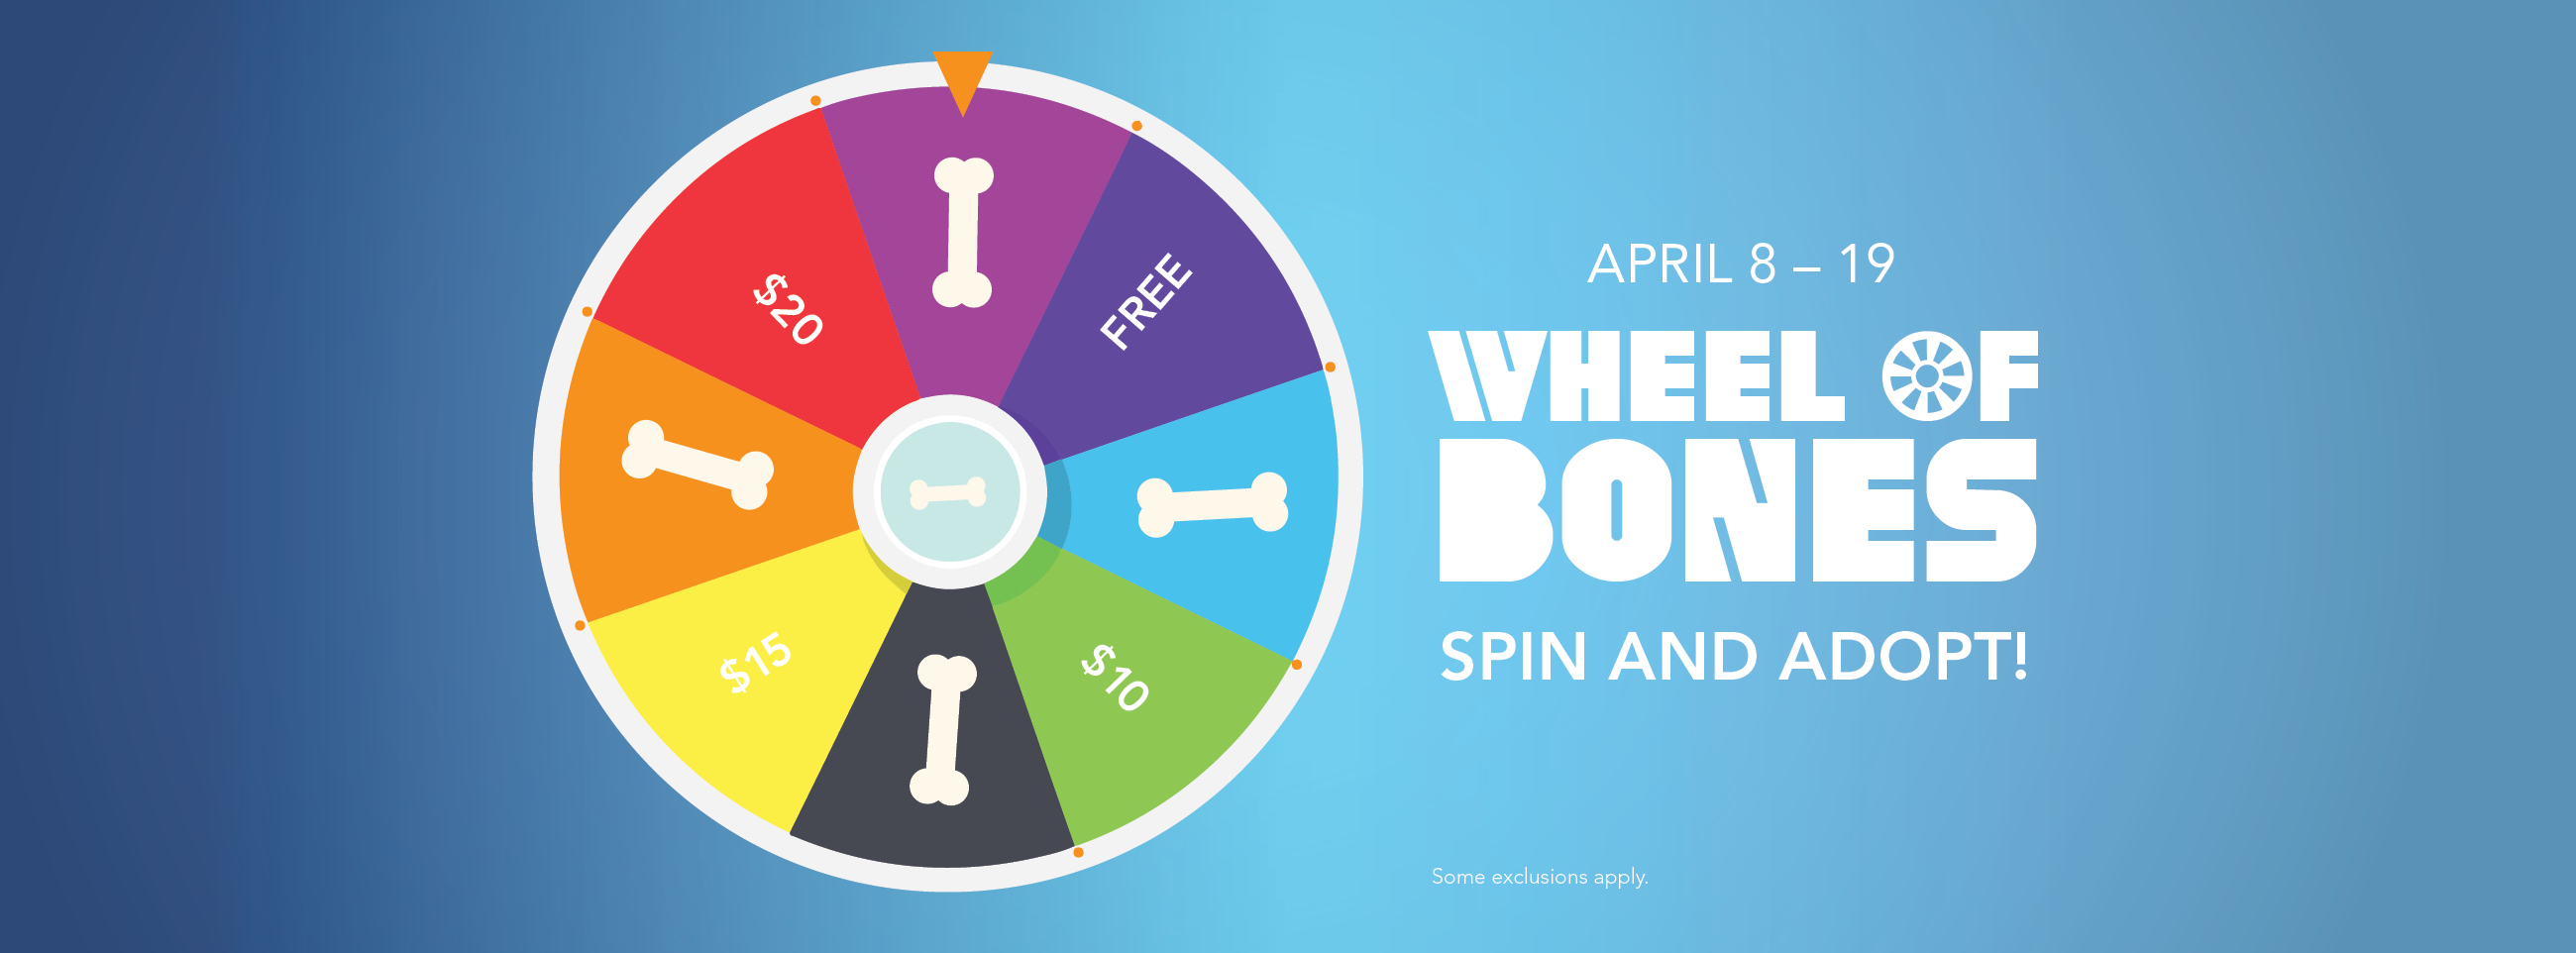 wheel spin adopt bones pet animal huntsvilleal services gov huntsville spinning